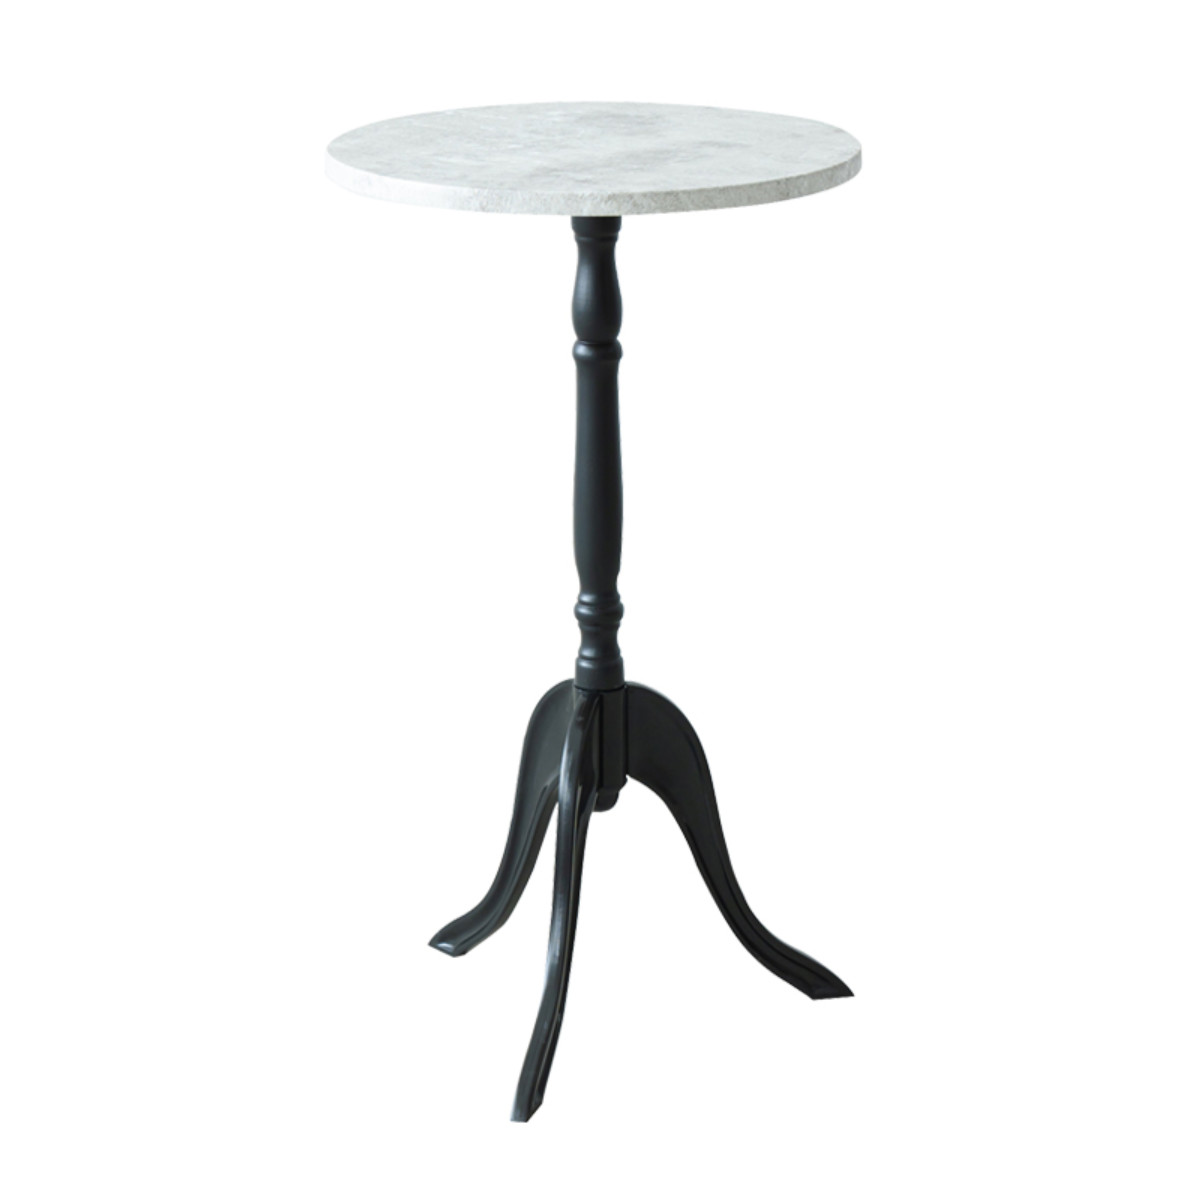 サイドテーブル 高さ52.5cm コーディサイドテーブル 大理石風 木目調 （ 丸 テーブル ミニテーブル コーヒーテーブル ナイトテーブル ）